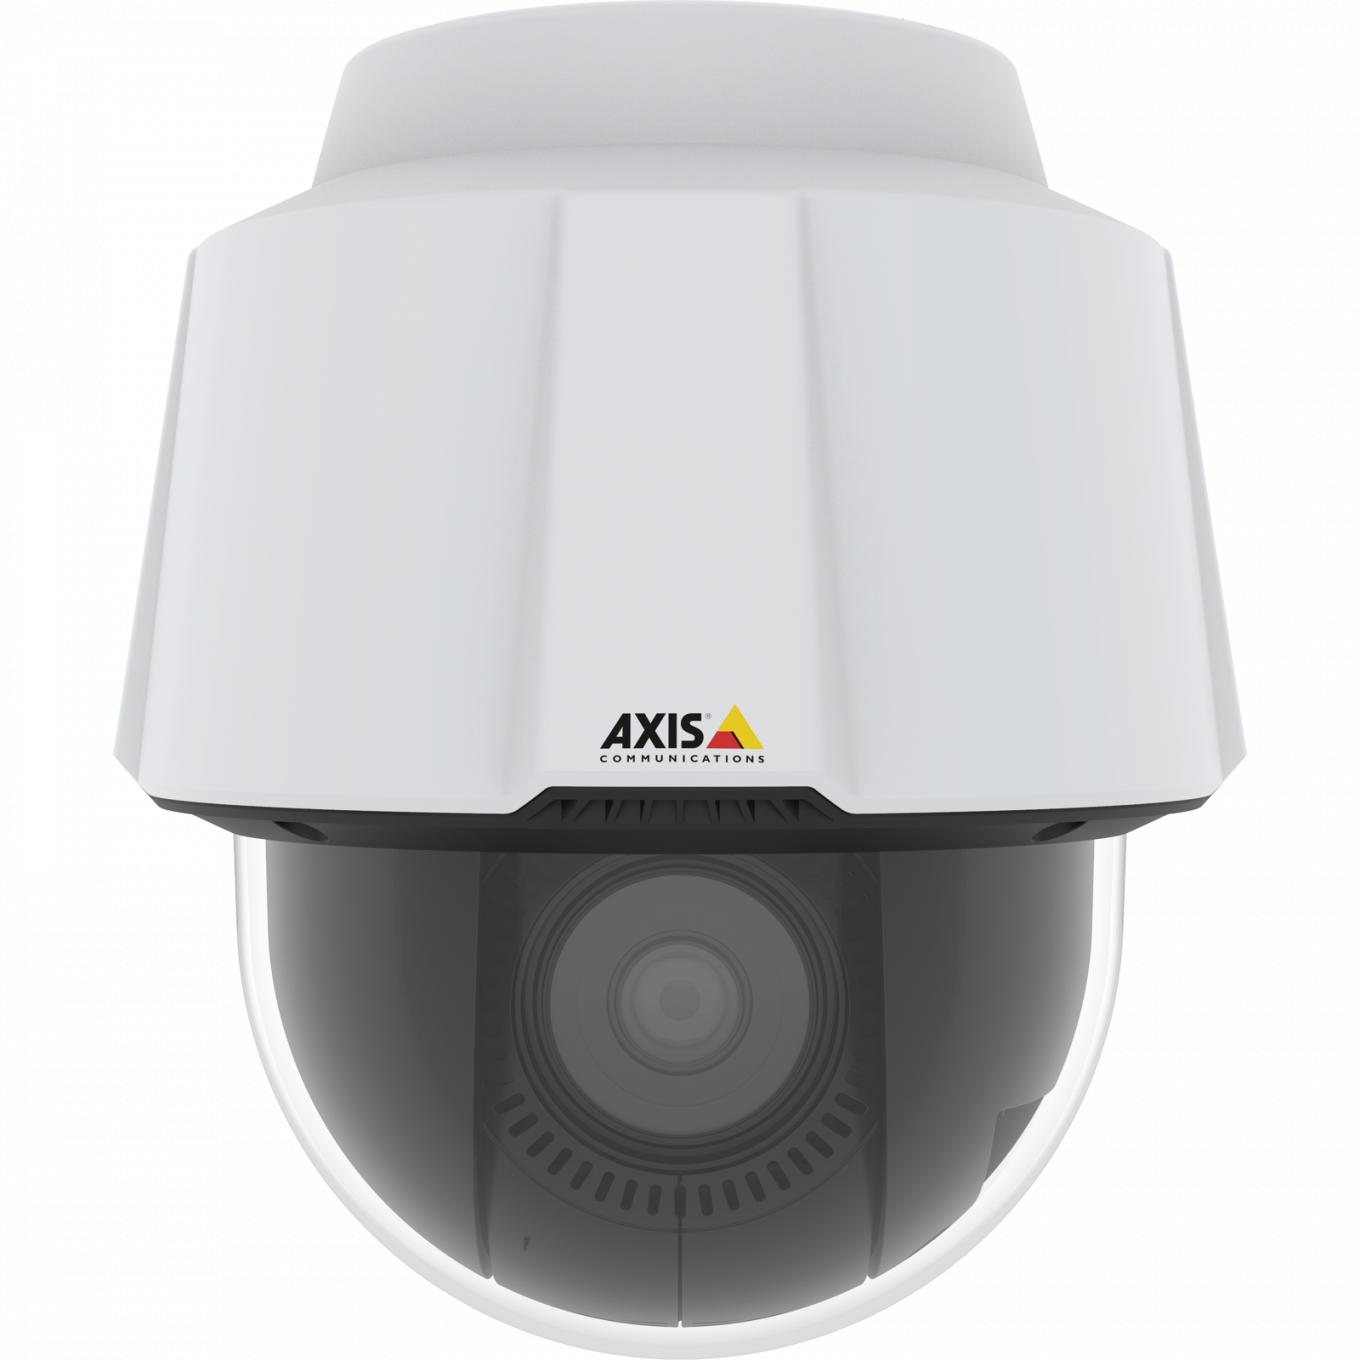  Axis IP Camera P5655-E verfügt über Zipstream mit Unterstützung für H.264 und H.265 sowie signierte Firmware und sicheres Hochfahren